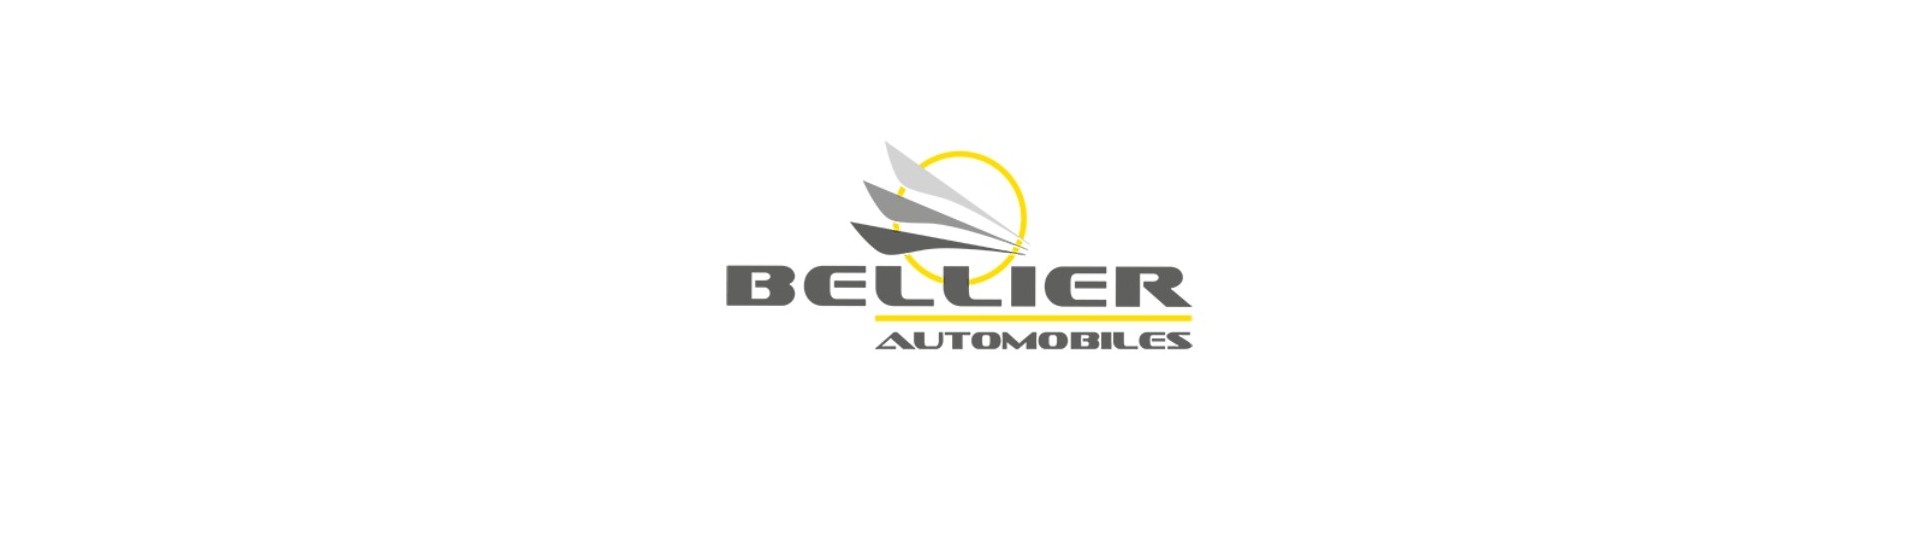 Moyeu + freno disco al mejor precio coche sin licencia Bellier